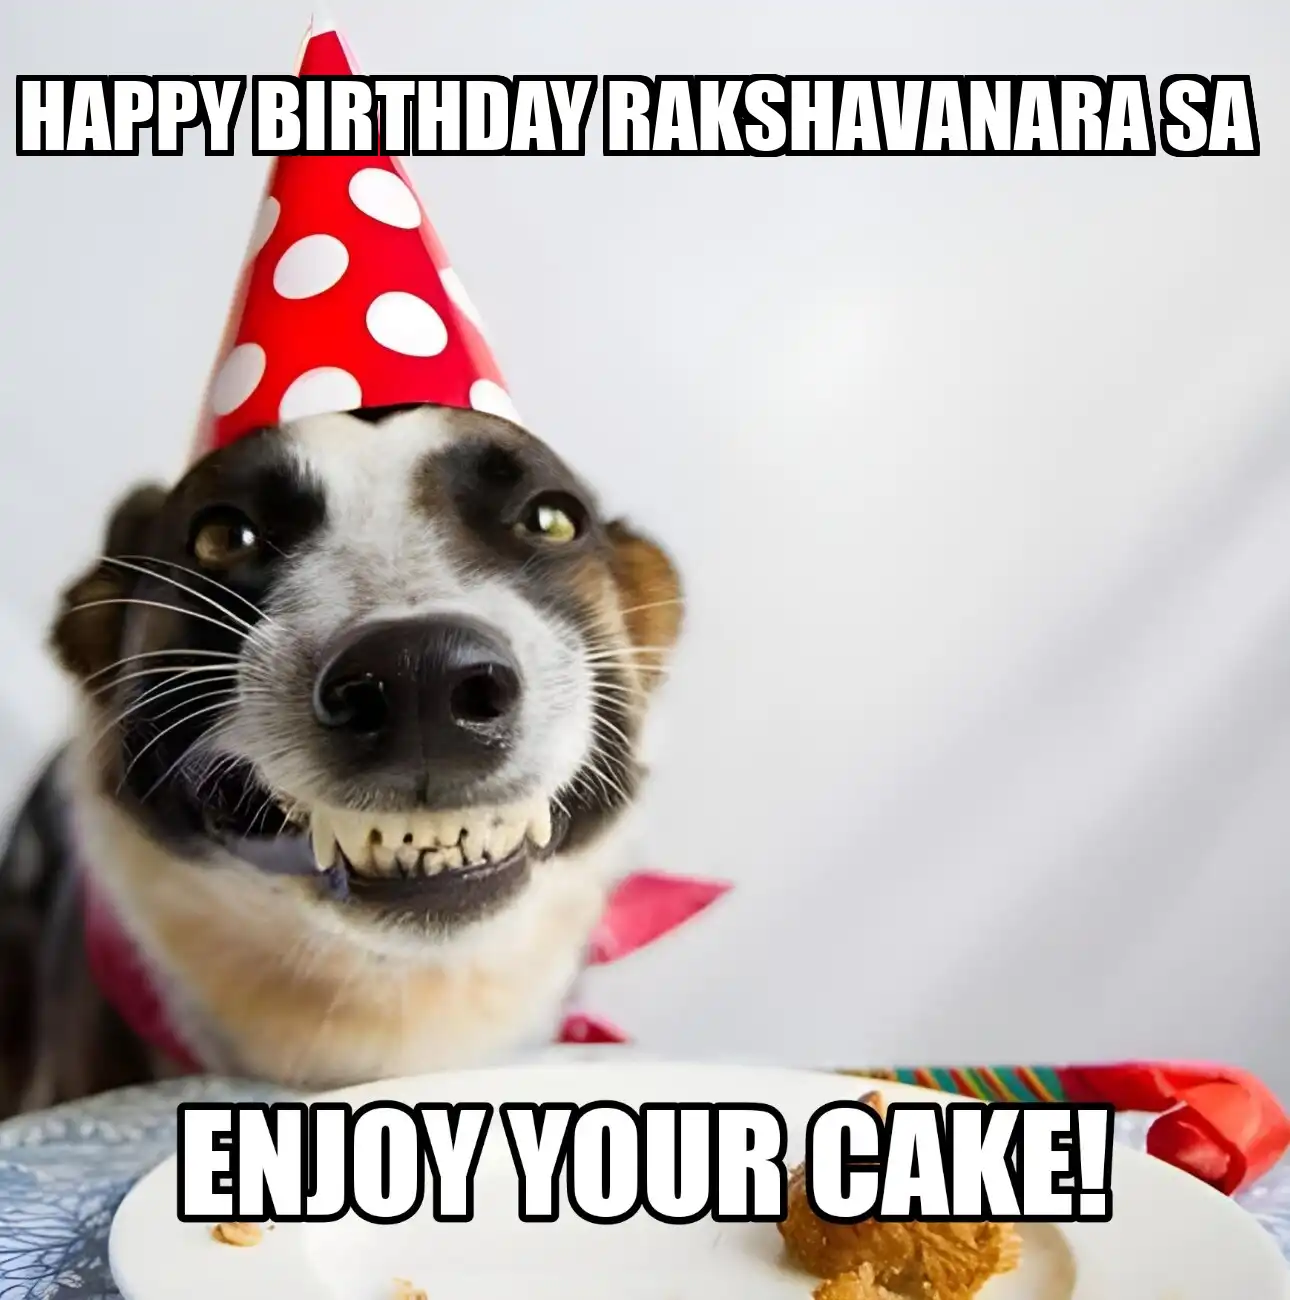 Happy Birthday Rakshavanara Sa Enjoy Your Cake Dog Meme